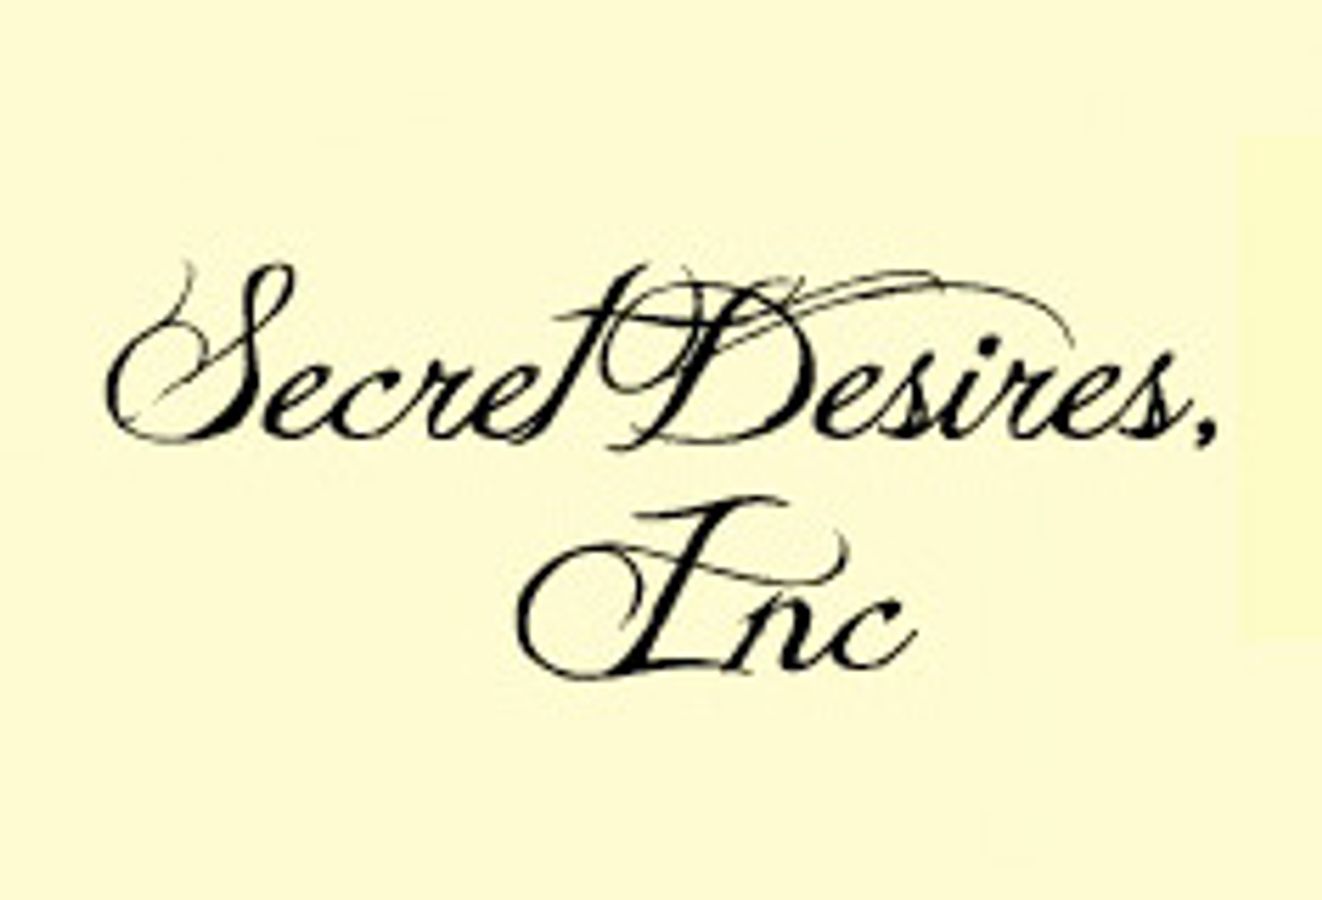 Secret Desires Inc.